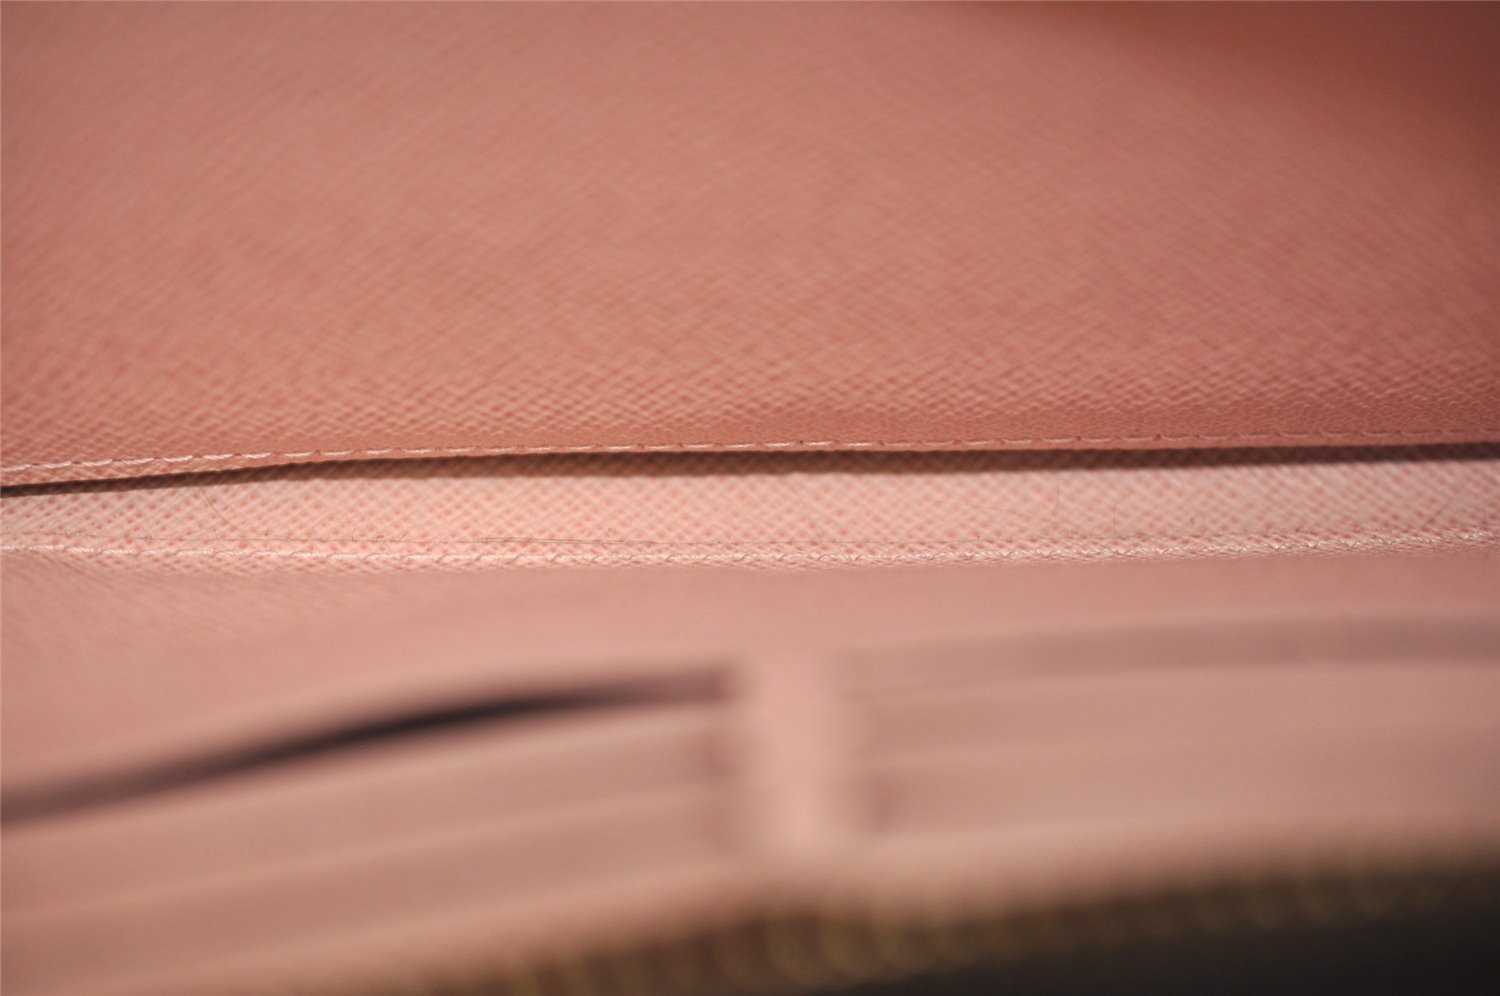 Authentic Louis Vuitton Monogram Zippy Wallet Long Purse Pink M41894 LV 3982J